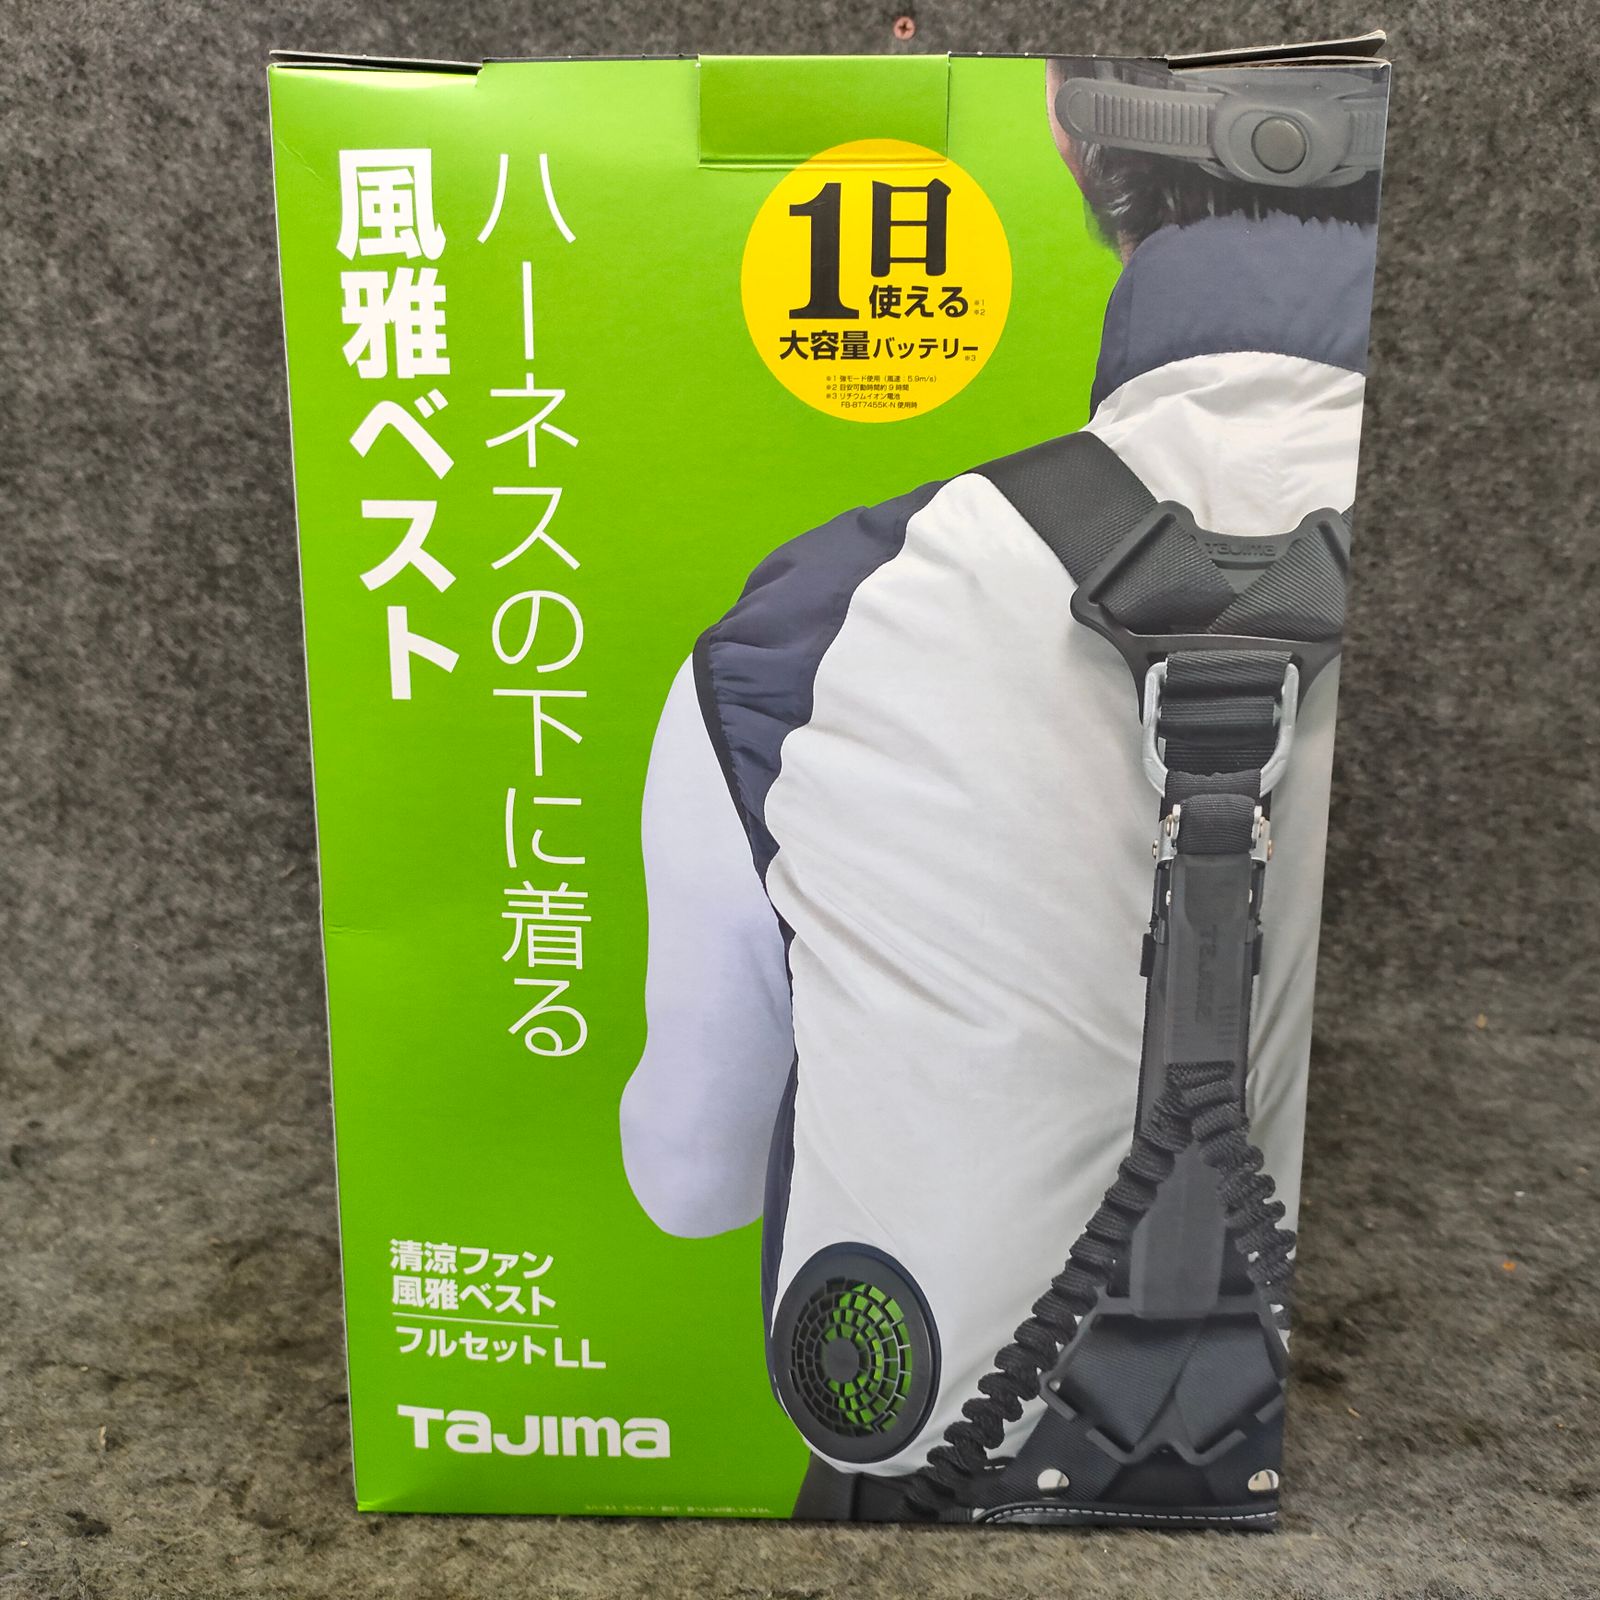 ▽タジマ(Tajima) 清涼ファン風雅ベスト フルセットLL FV-AA18SEBWLL